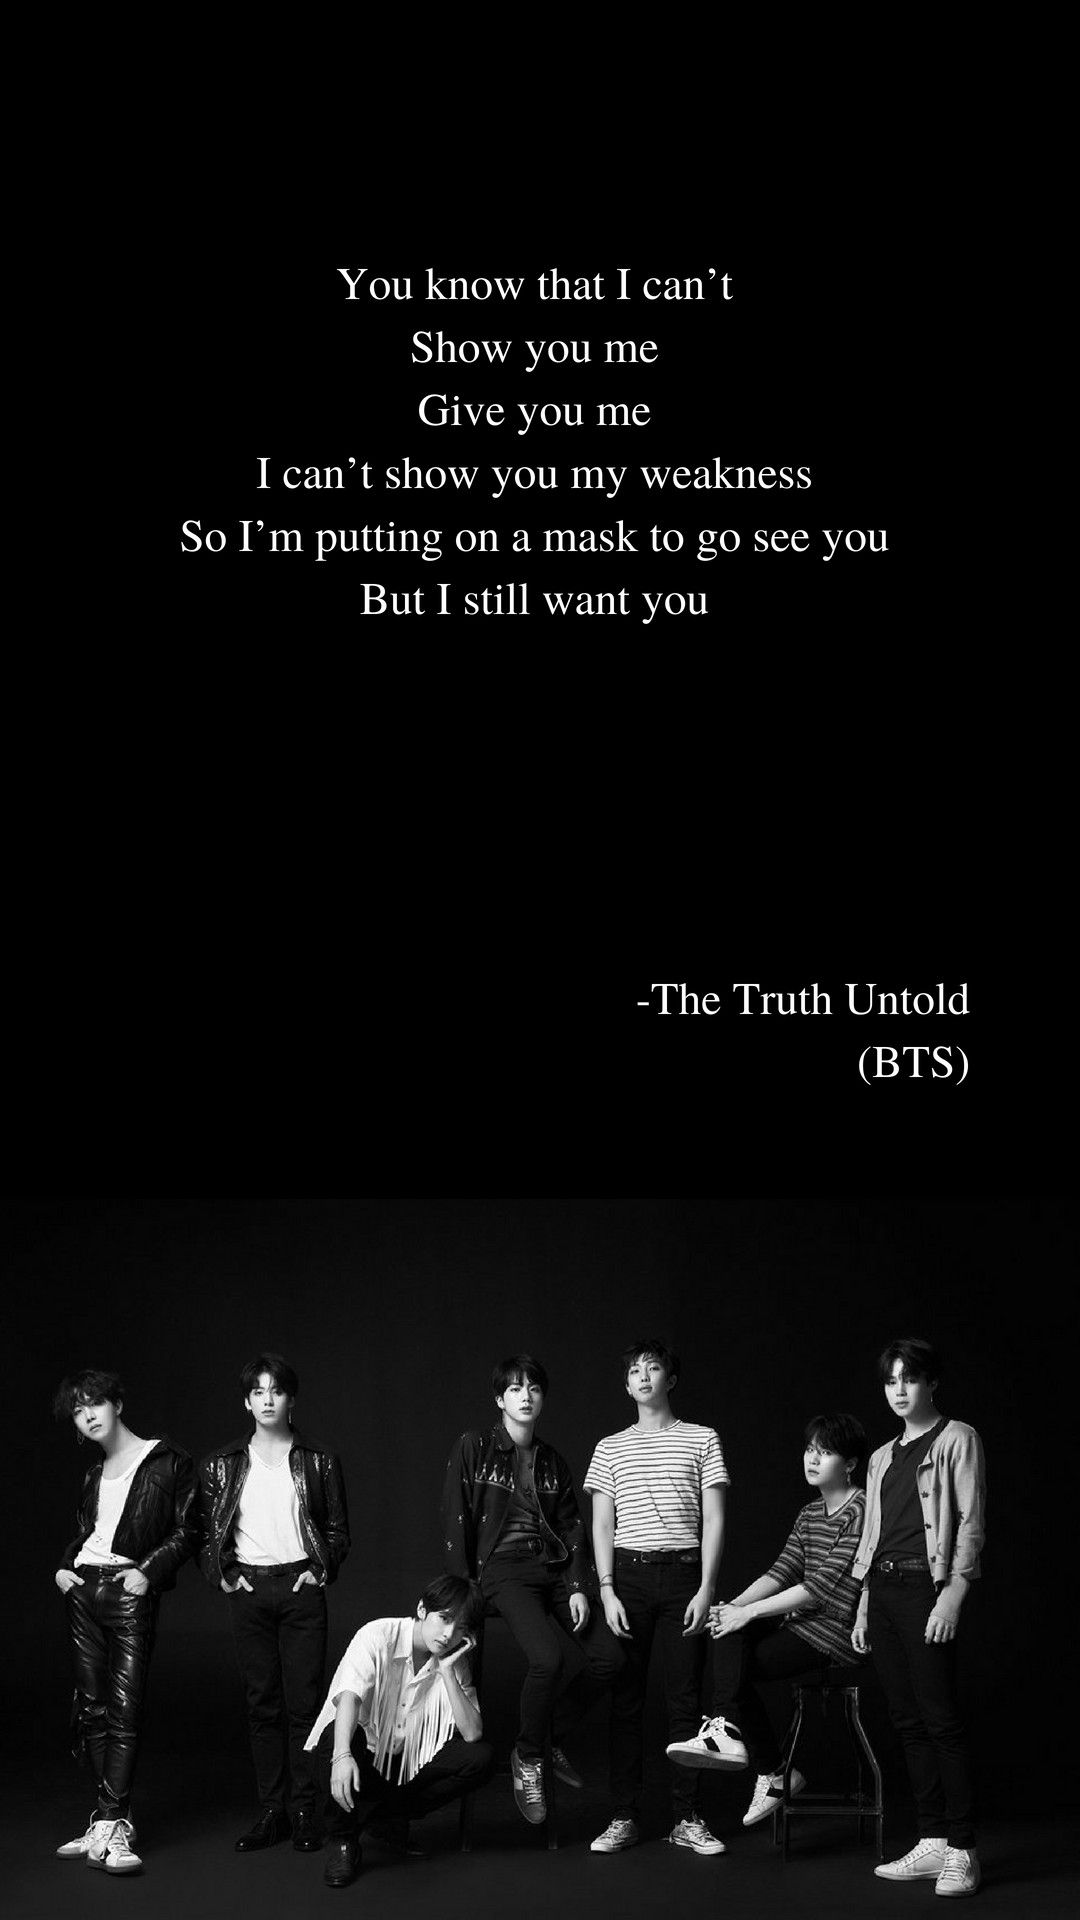 The truth untold by bts lyrics wallpaper bts lyrics quotes bts lyric bts song lyrics